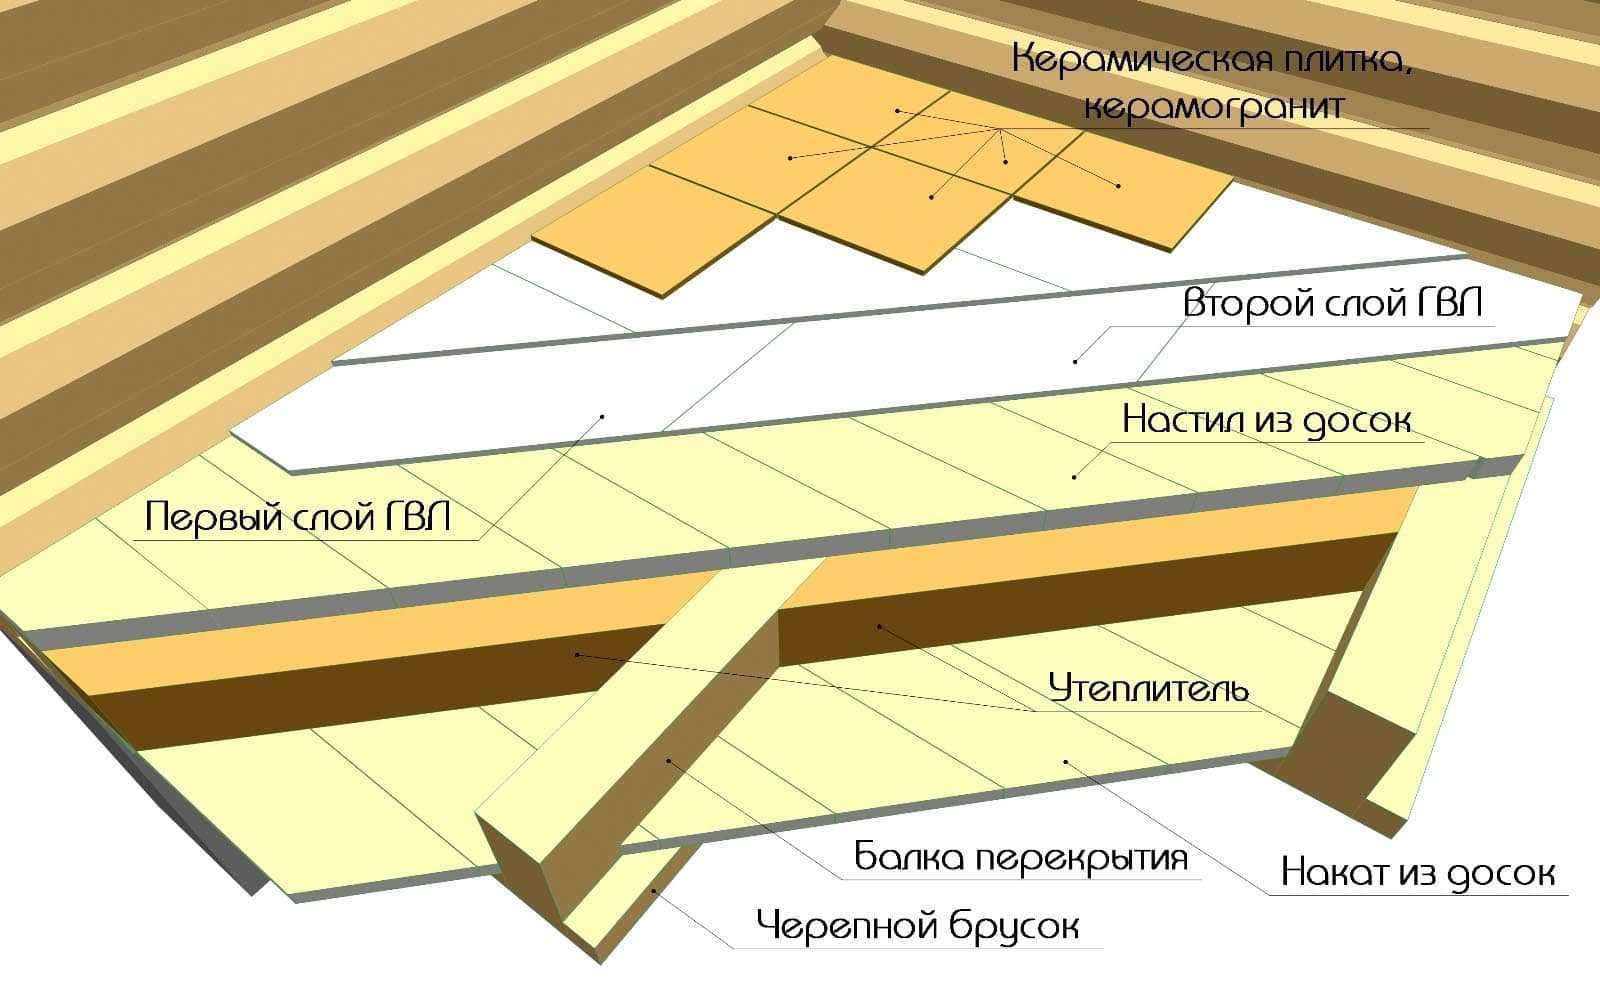 Укладка плитки на деревянный пол: способы, тонкости технологии Правильная подготовка пола при укладке прямо на доски, на ОСБ, ДСП, фанеру, ГВЛ, стяжку